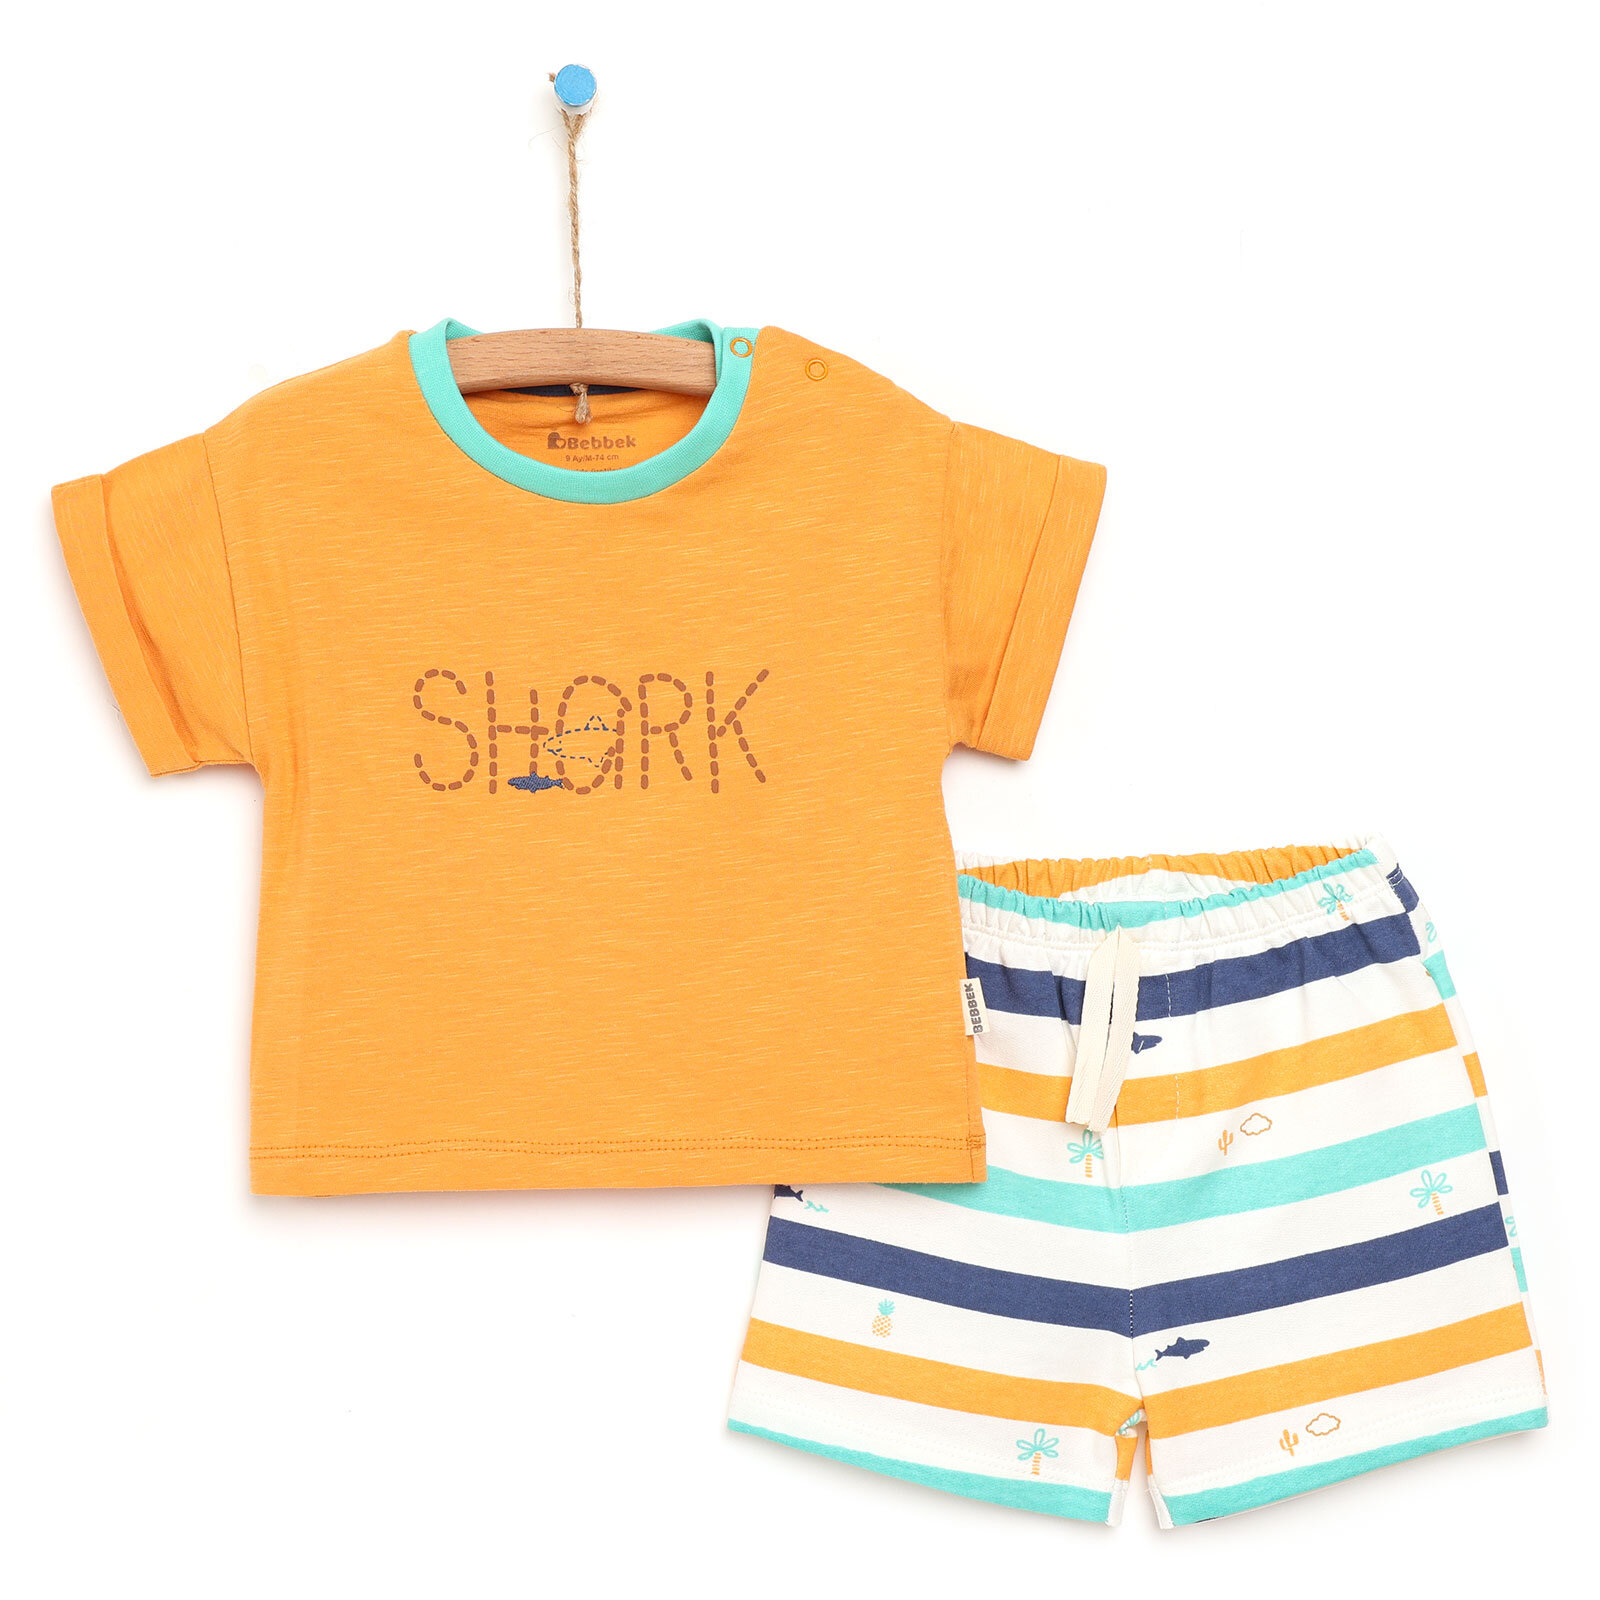 Baby Shark Tshirt-Şort Takım Erkek Bebek